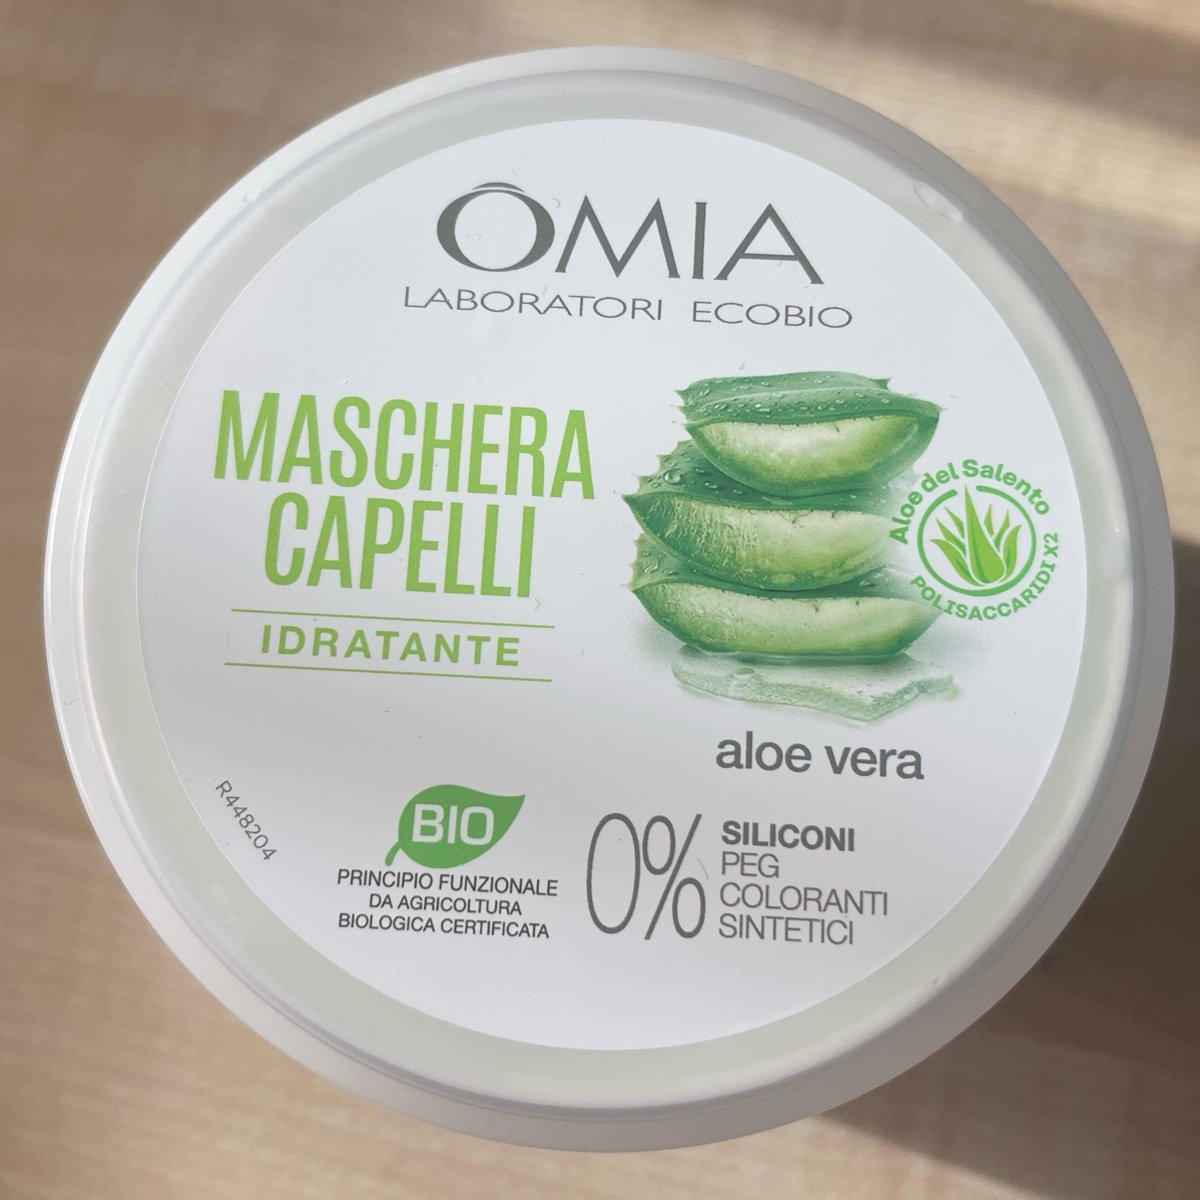 Omia laboratori ecobio Maschera Capelli Idratante Aloe Vera Reviews |  abillion